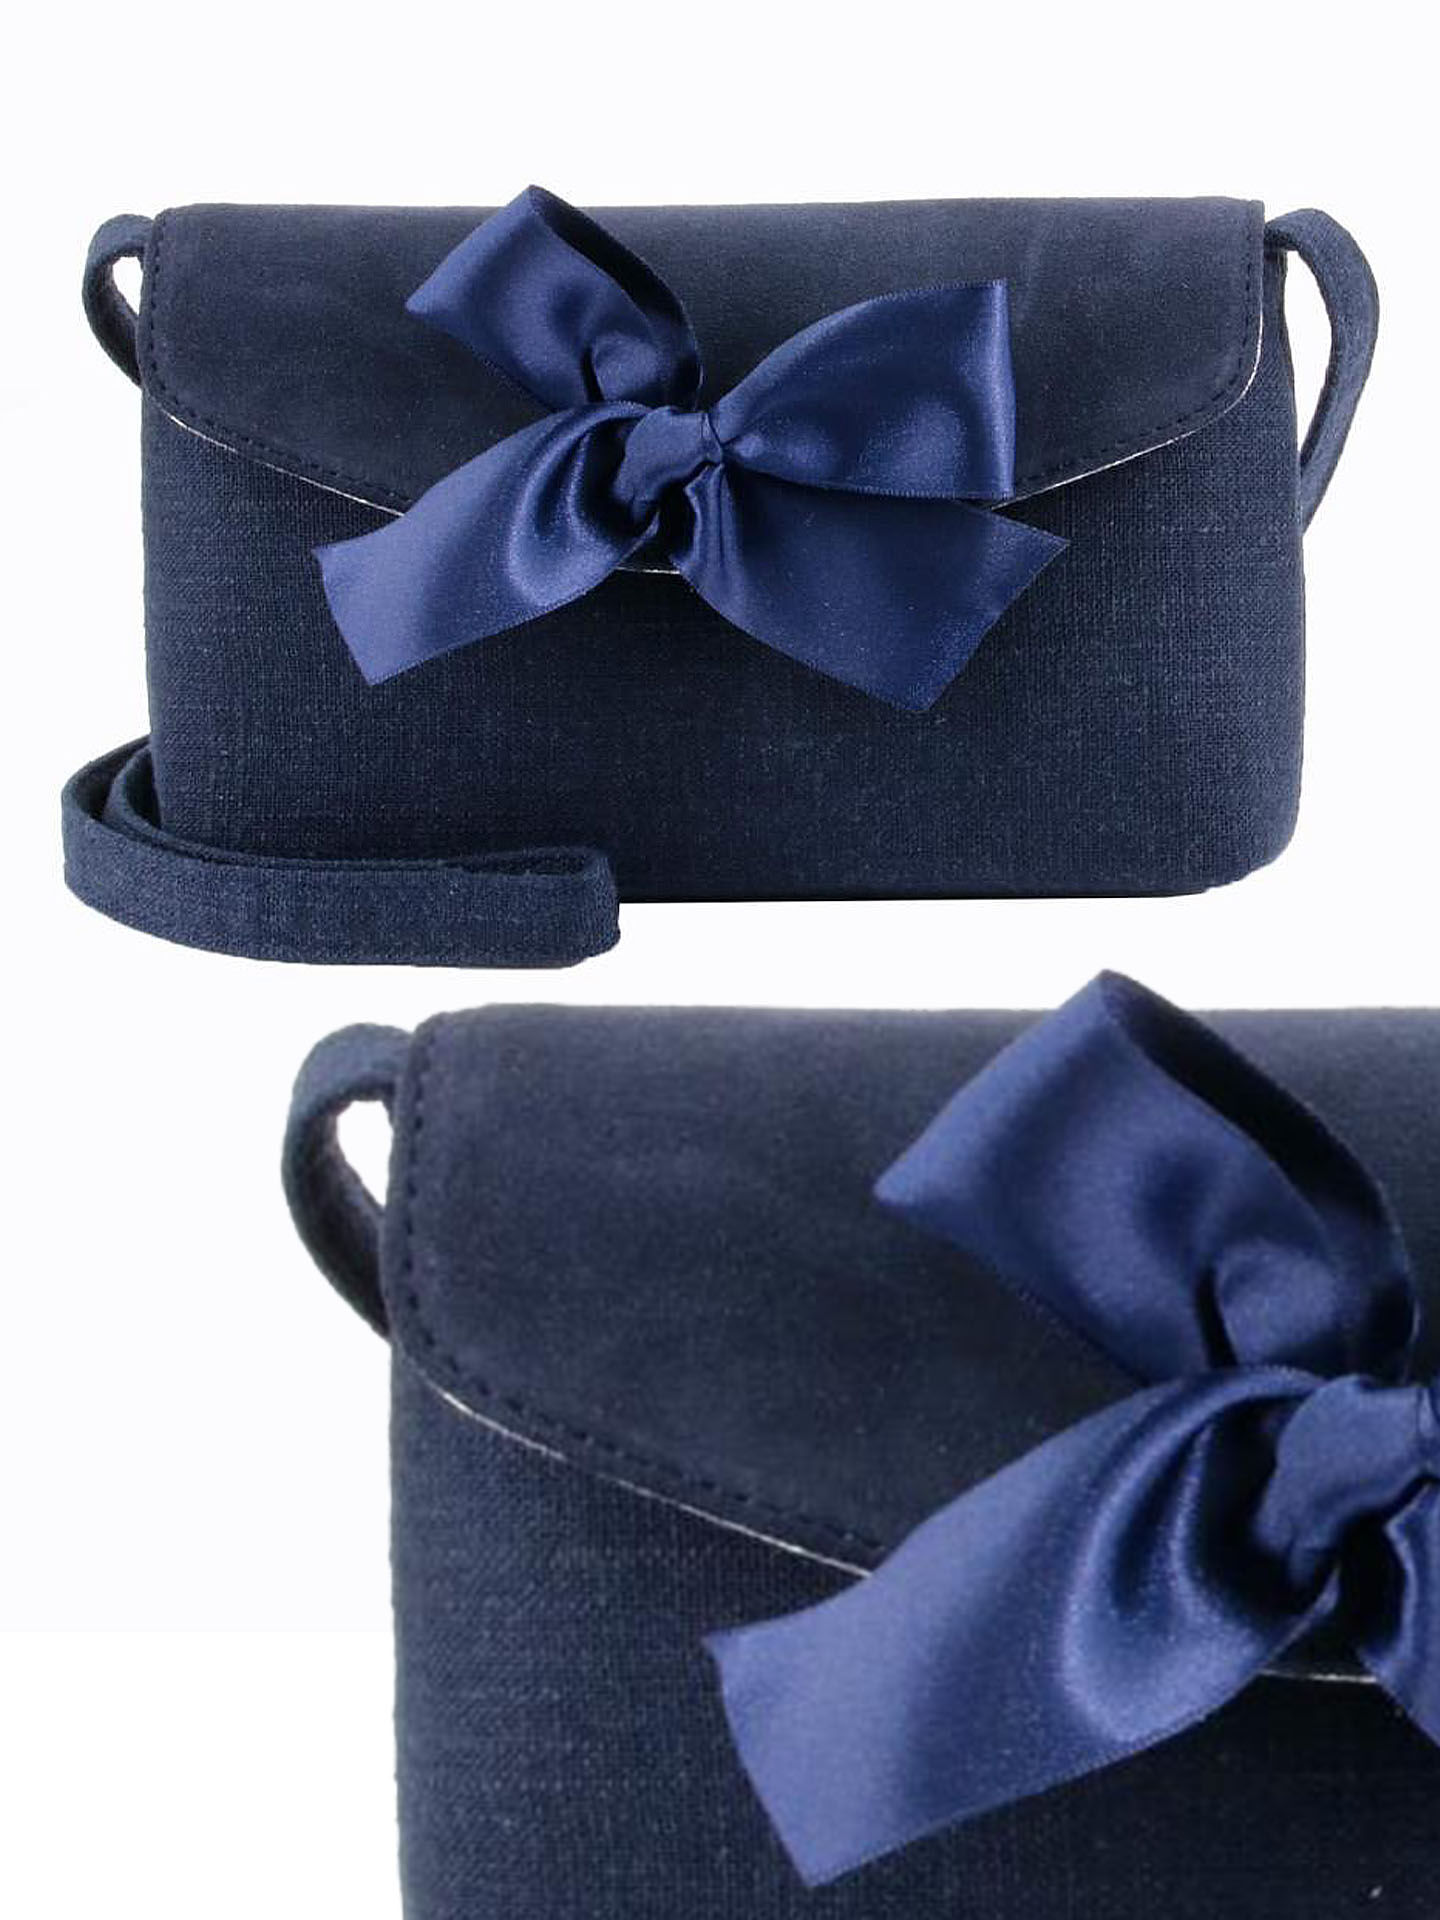 Trachtentasche Dirndltasche mit Schleife Marineblau